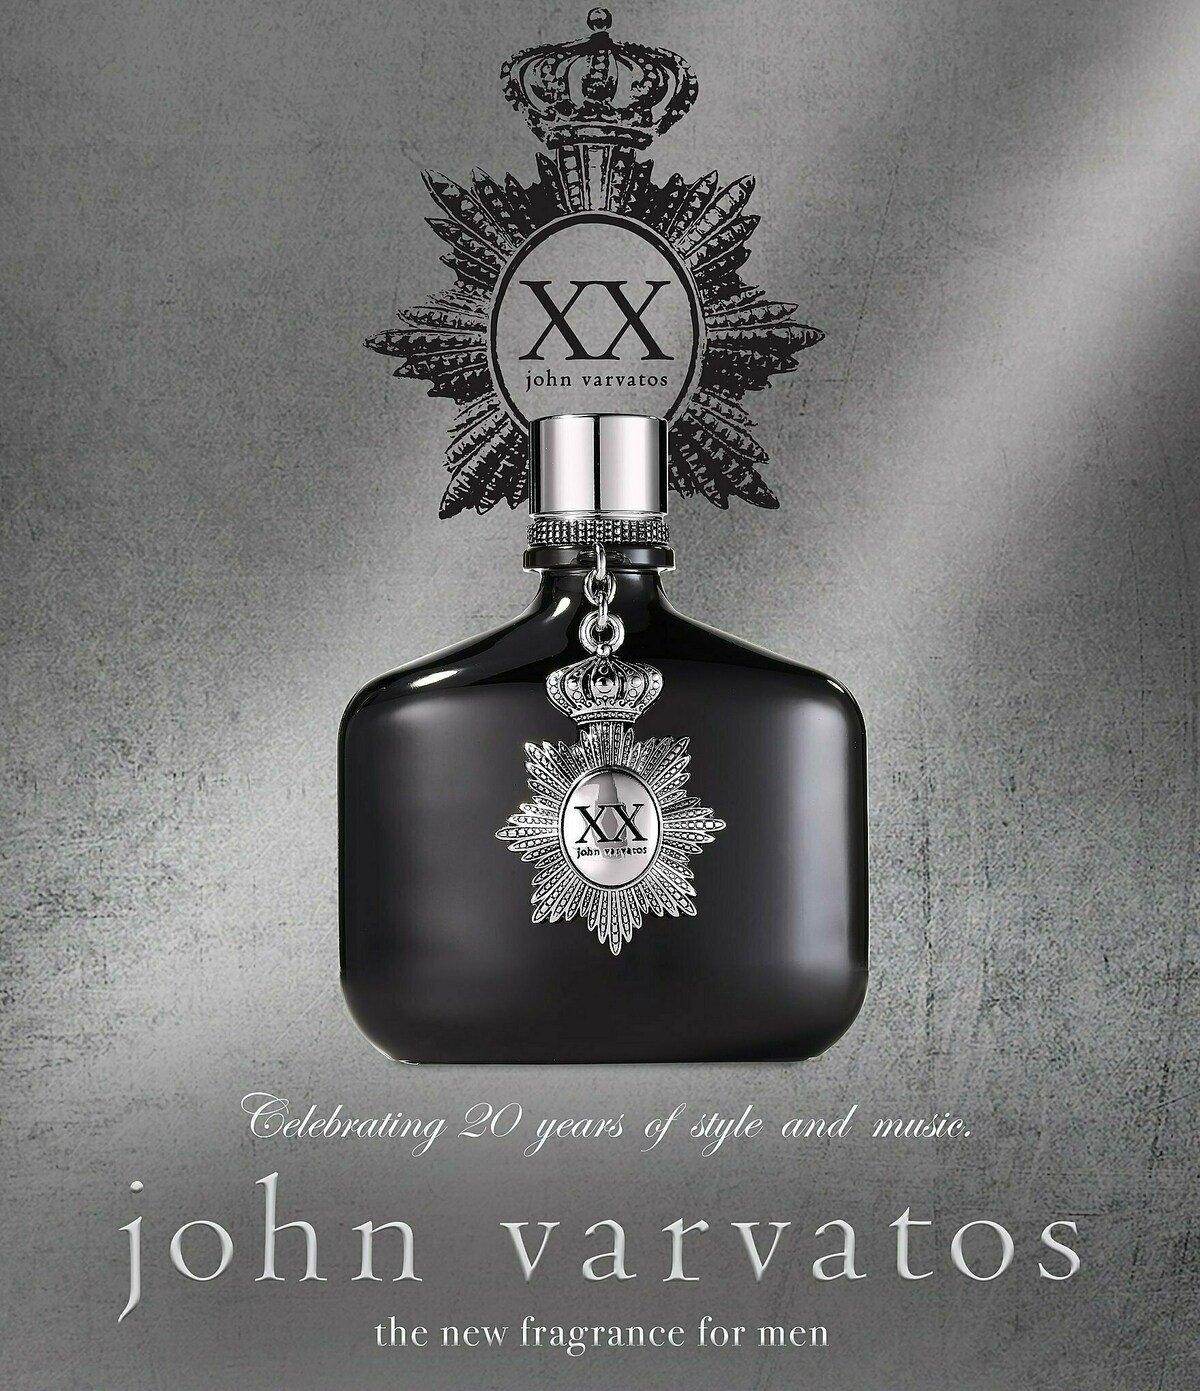 XX John Varvatos